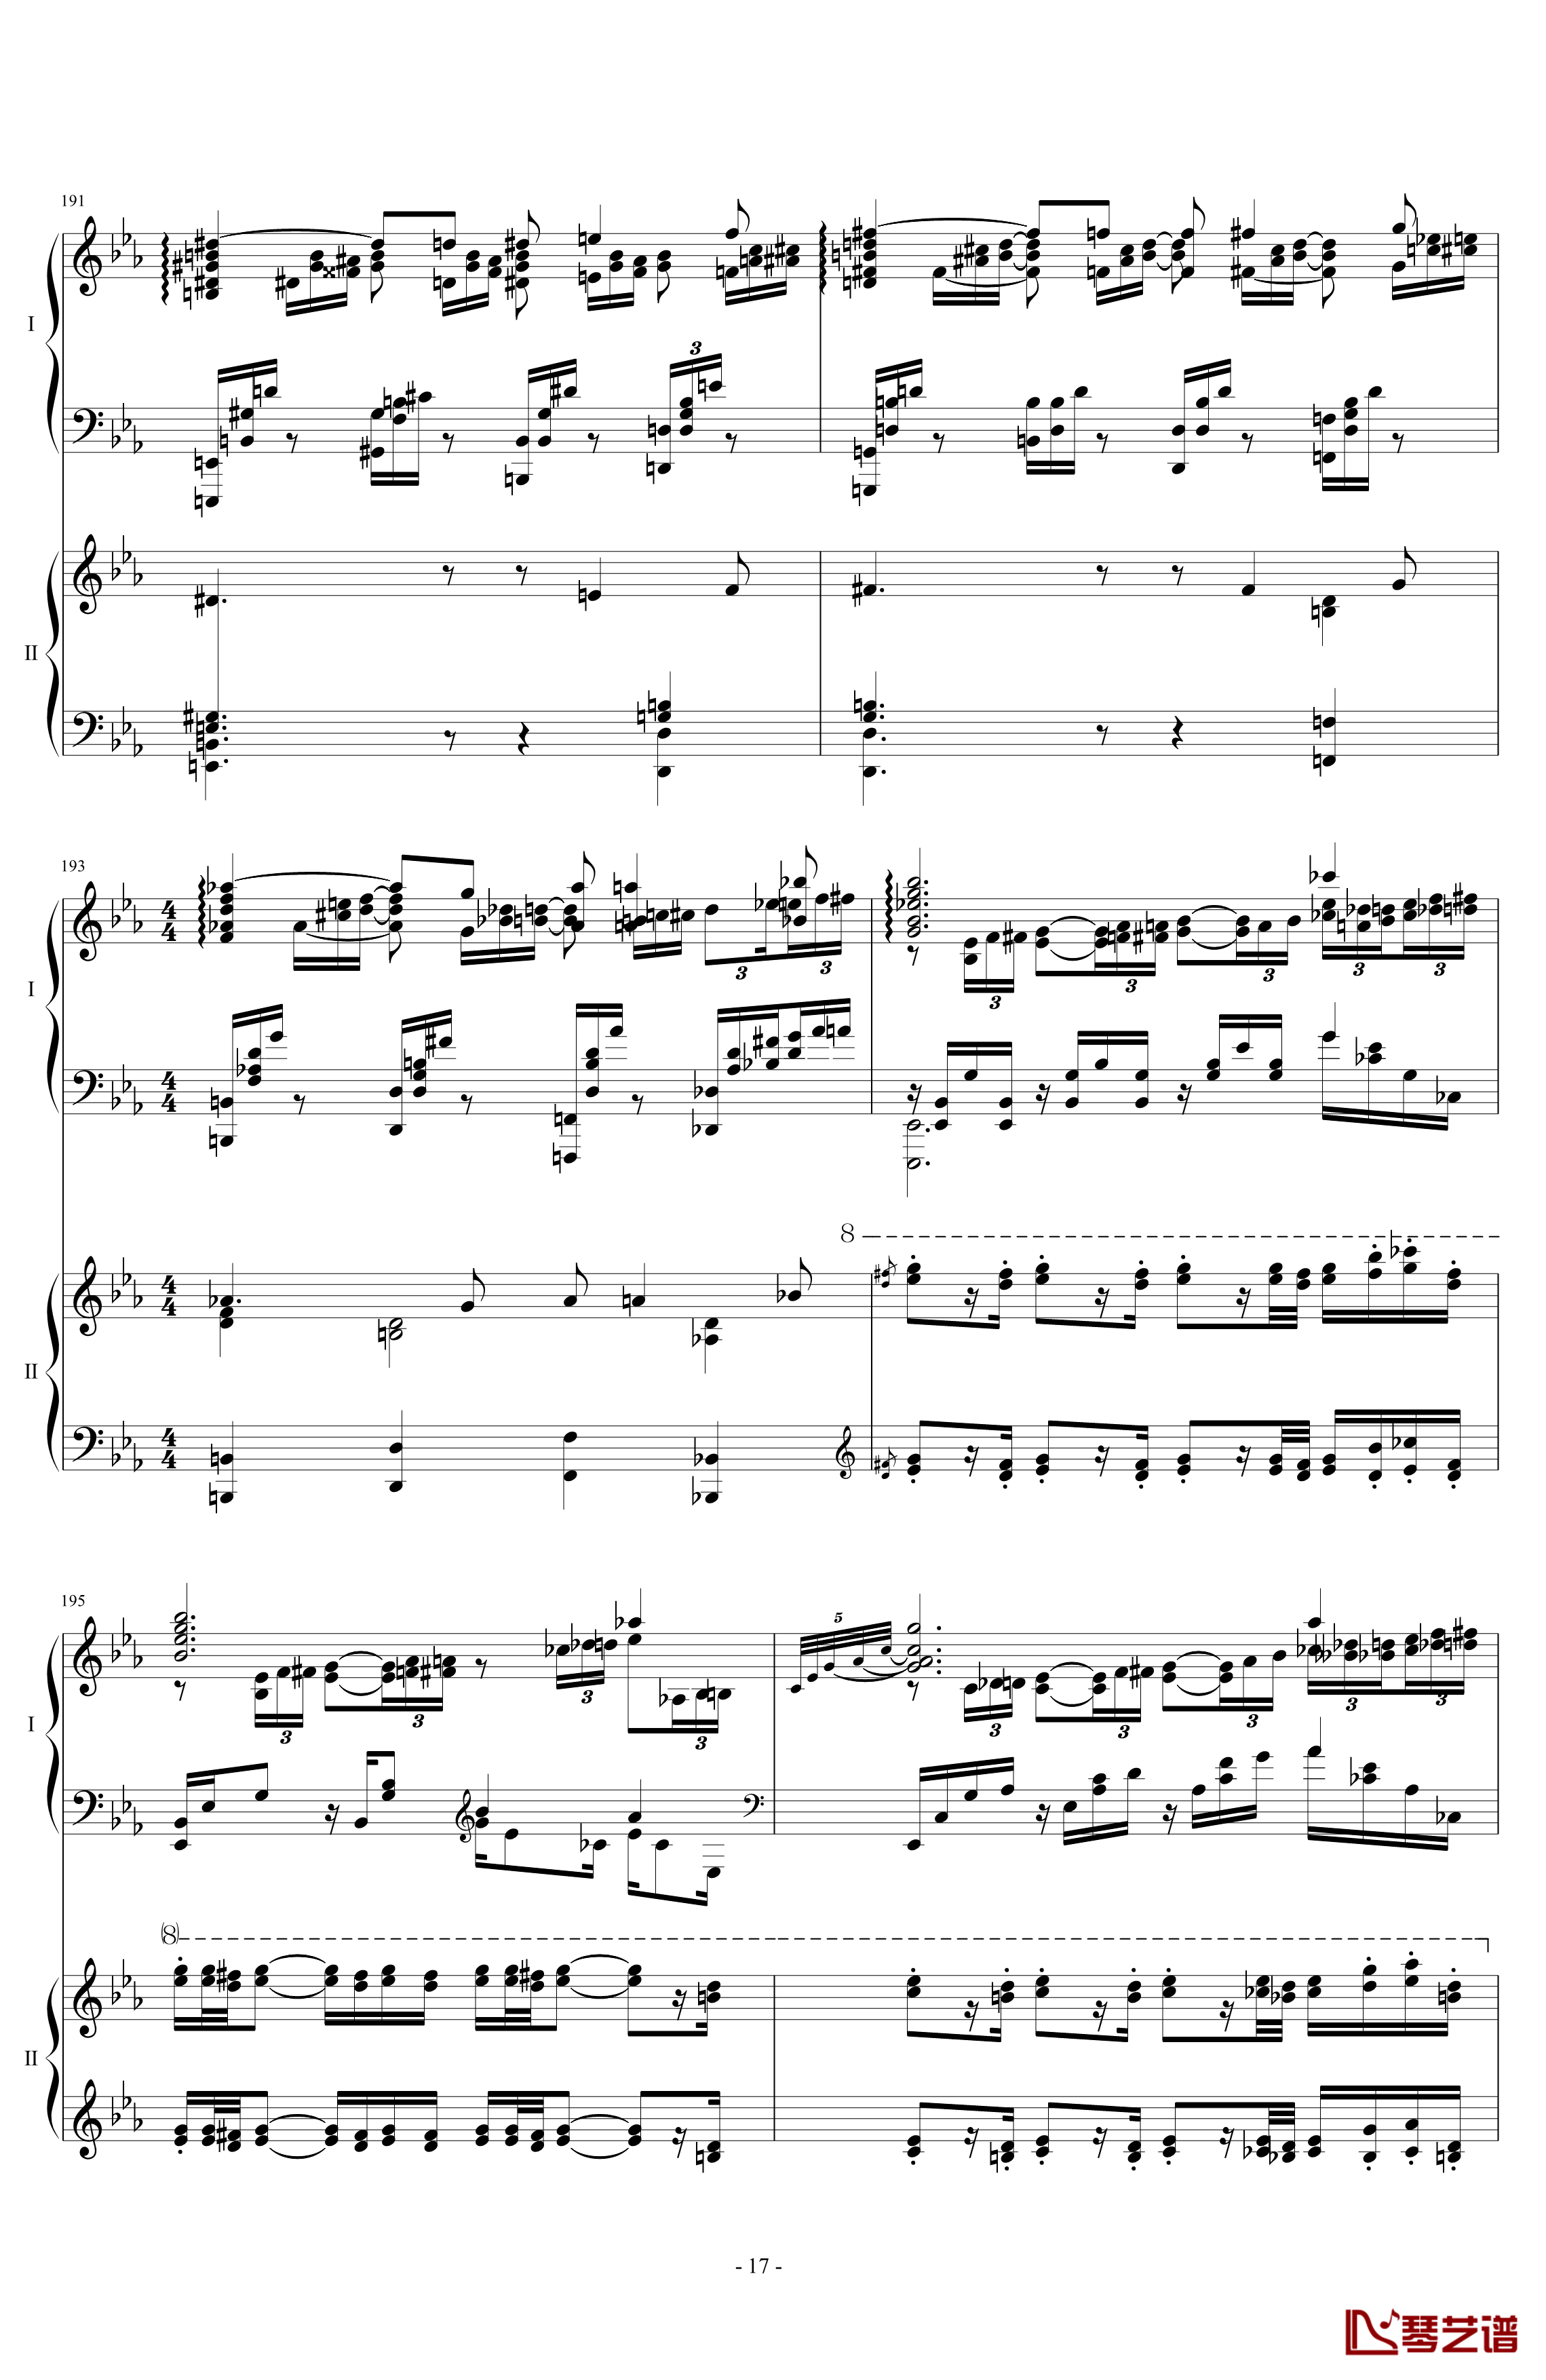 拉三第三乐章41页双钢琴钢琴谱-最难钢琴曲-拉赫马尼若夫17